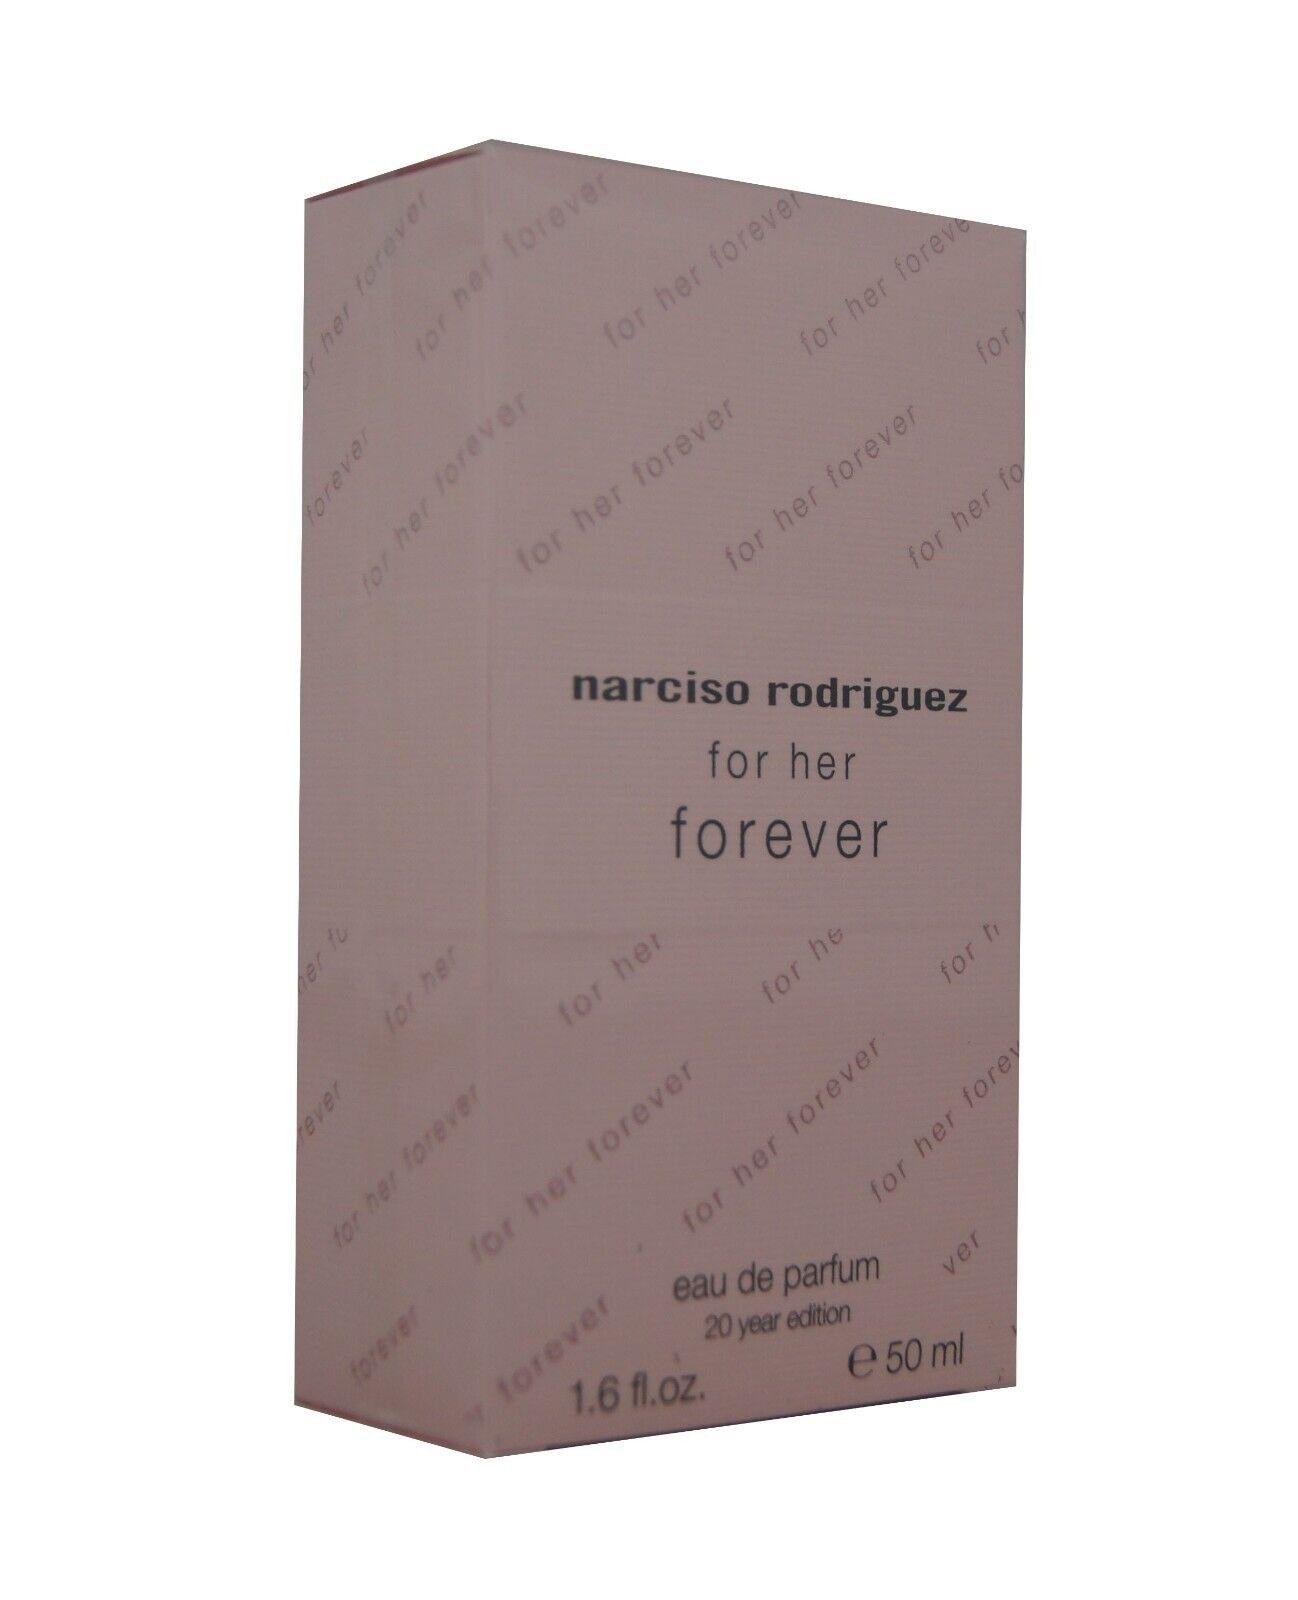 Narcisco Rodriguez Eau de Parfum narciso rodriguez For Her Forever Eau de Parfum edp 50ml.